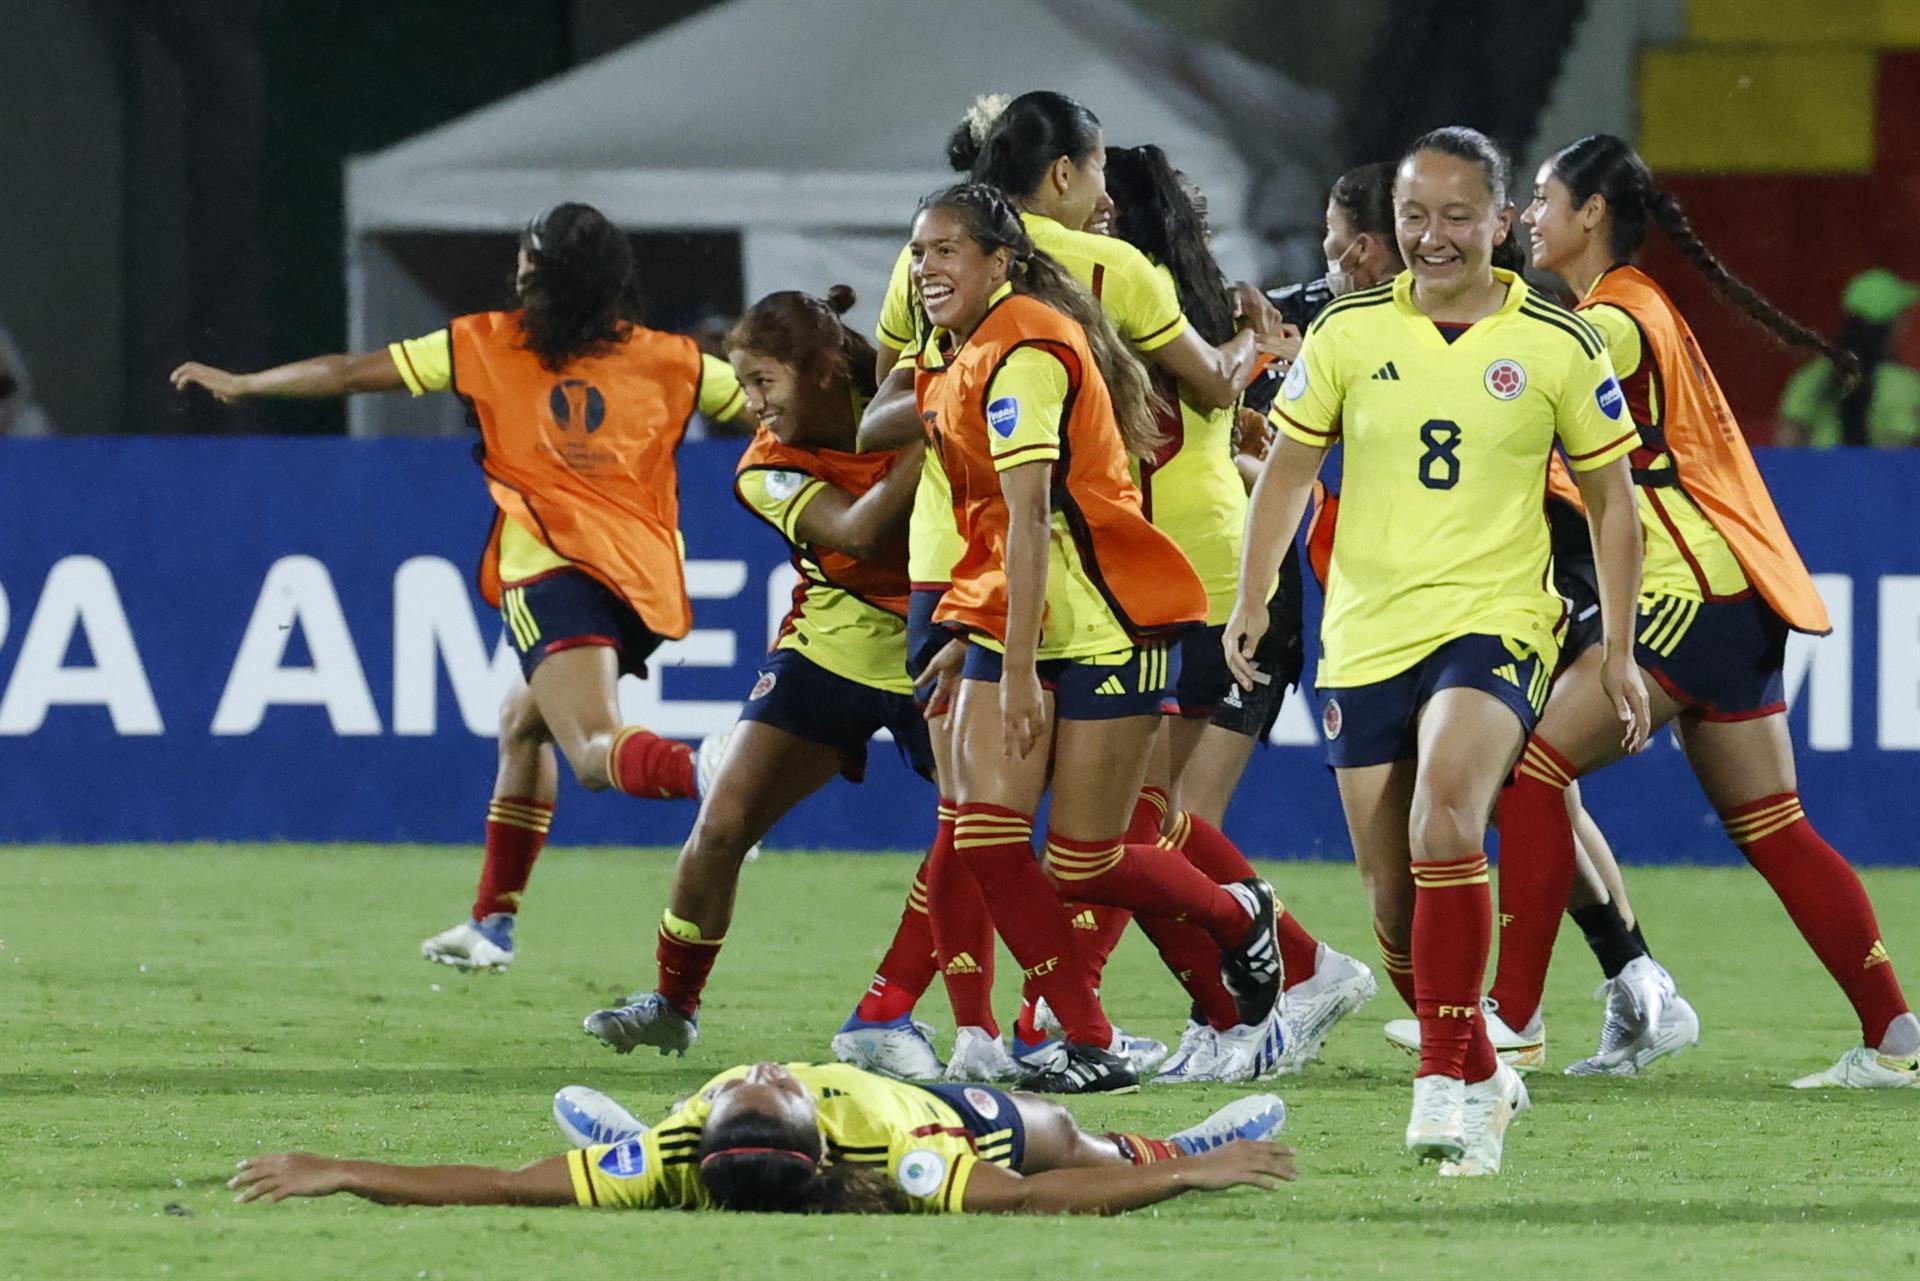 Jugadoras de Colombia celebra tras vencer a Argentina hoy, en un partido de la semifinal 